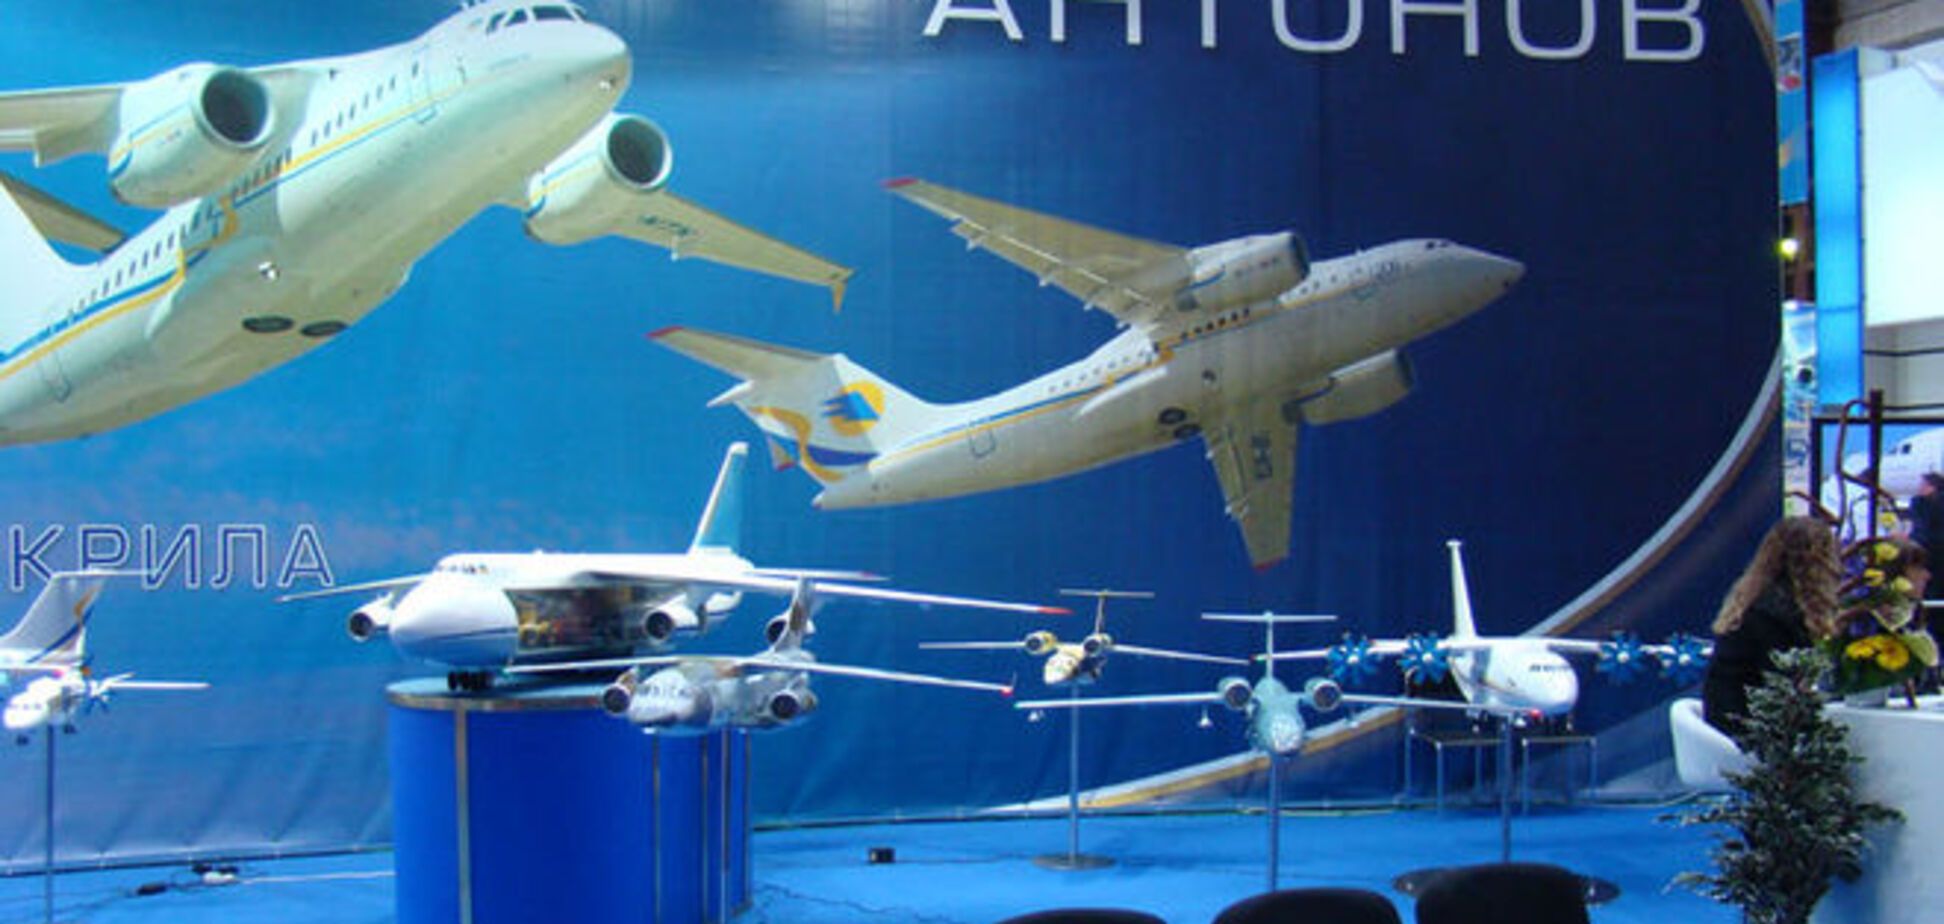 'Антонов' обіцяє випускати в 12 разів більше літаків на рік